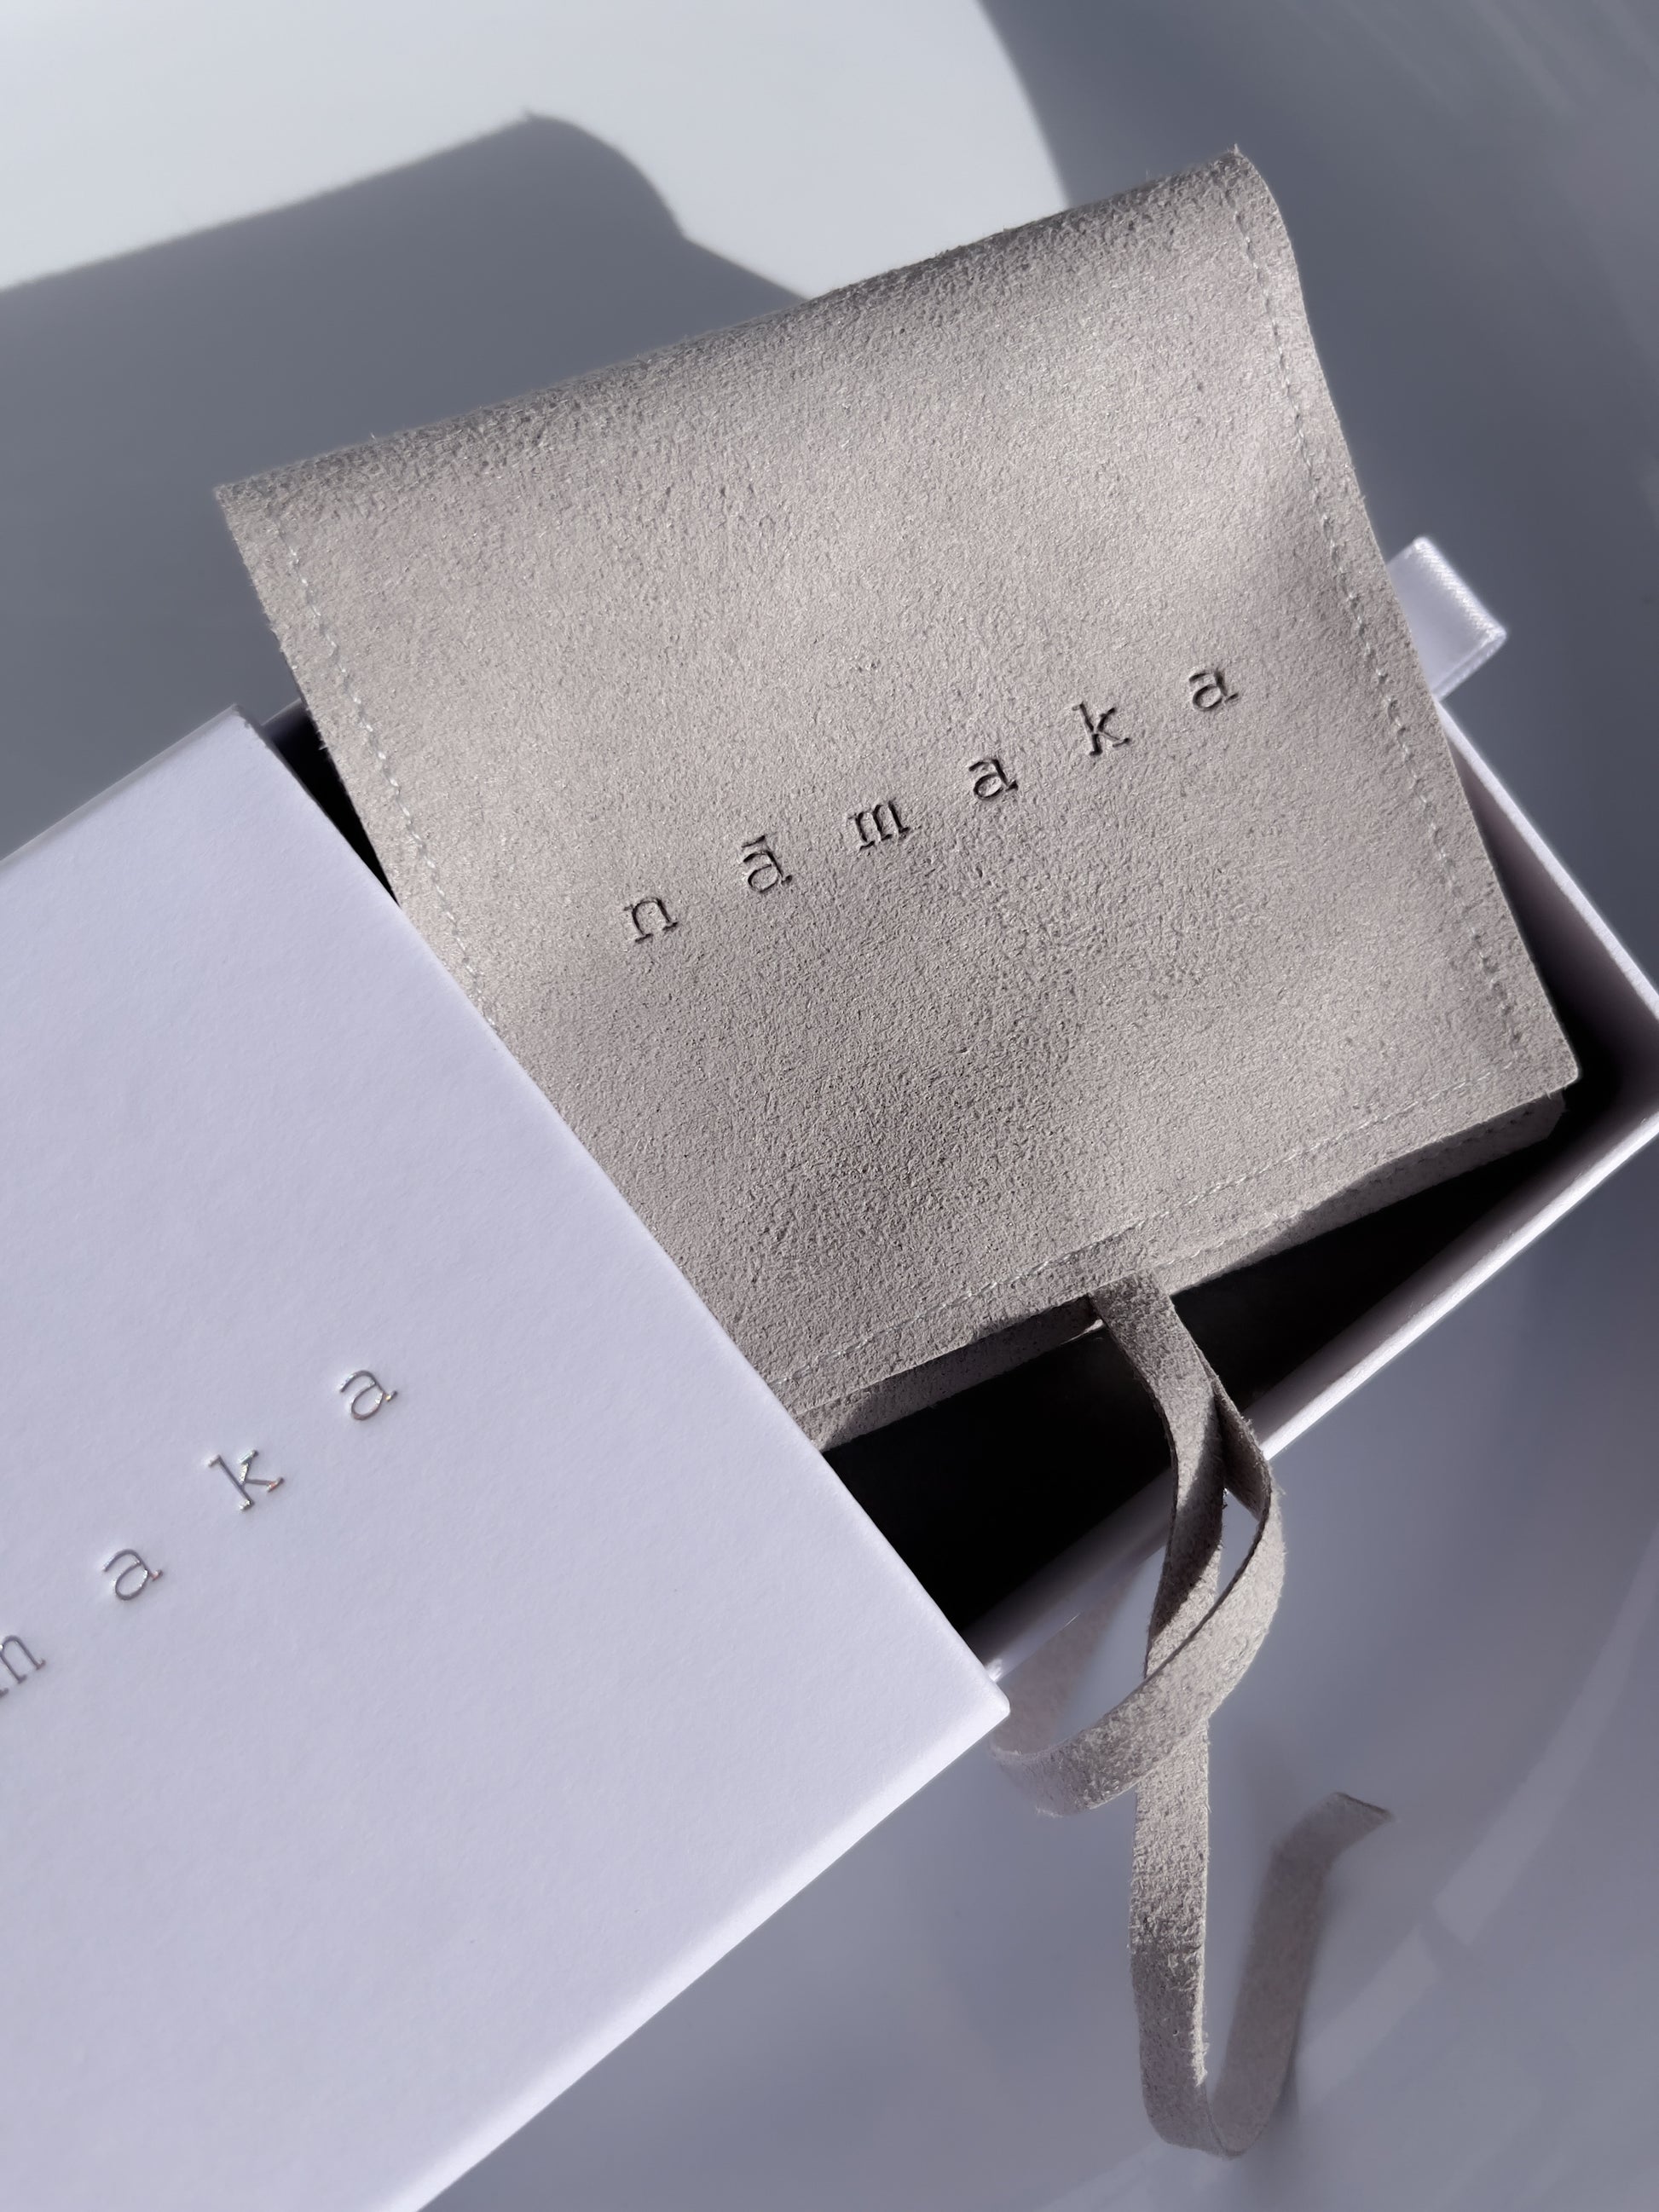 Nāmaka packaging. Designed and made by nāmaka.